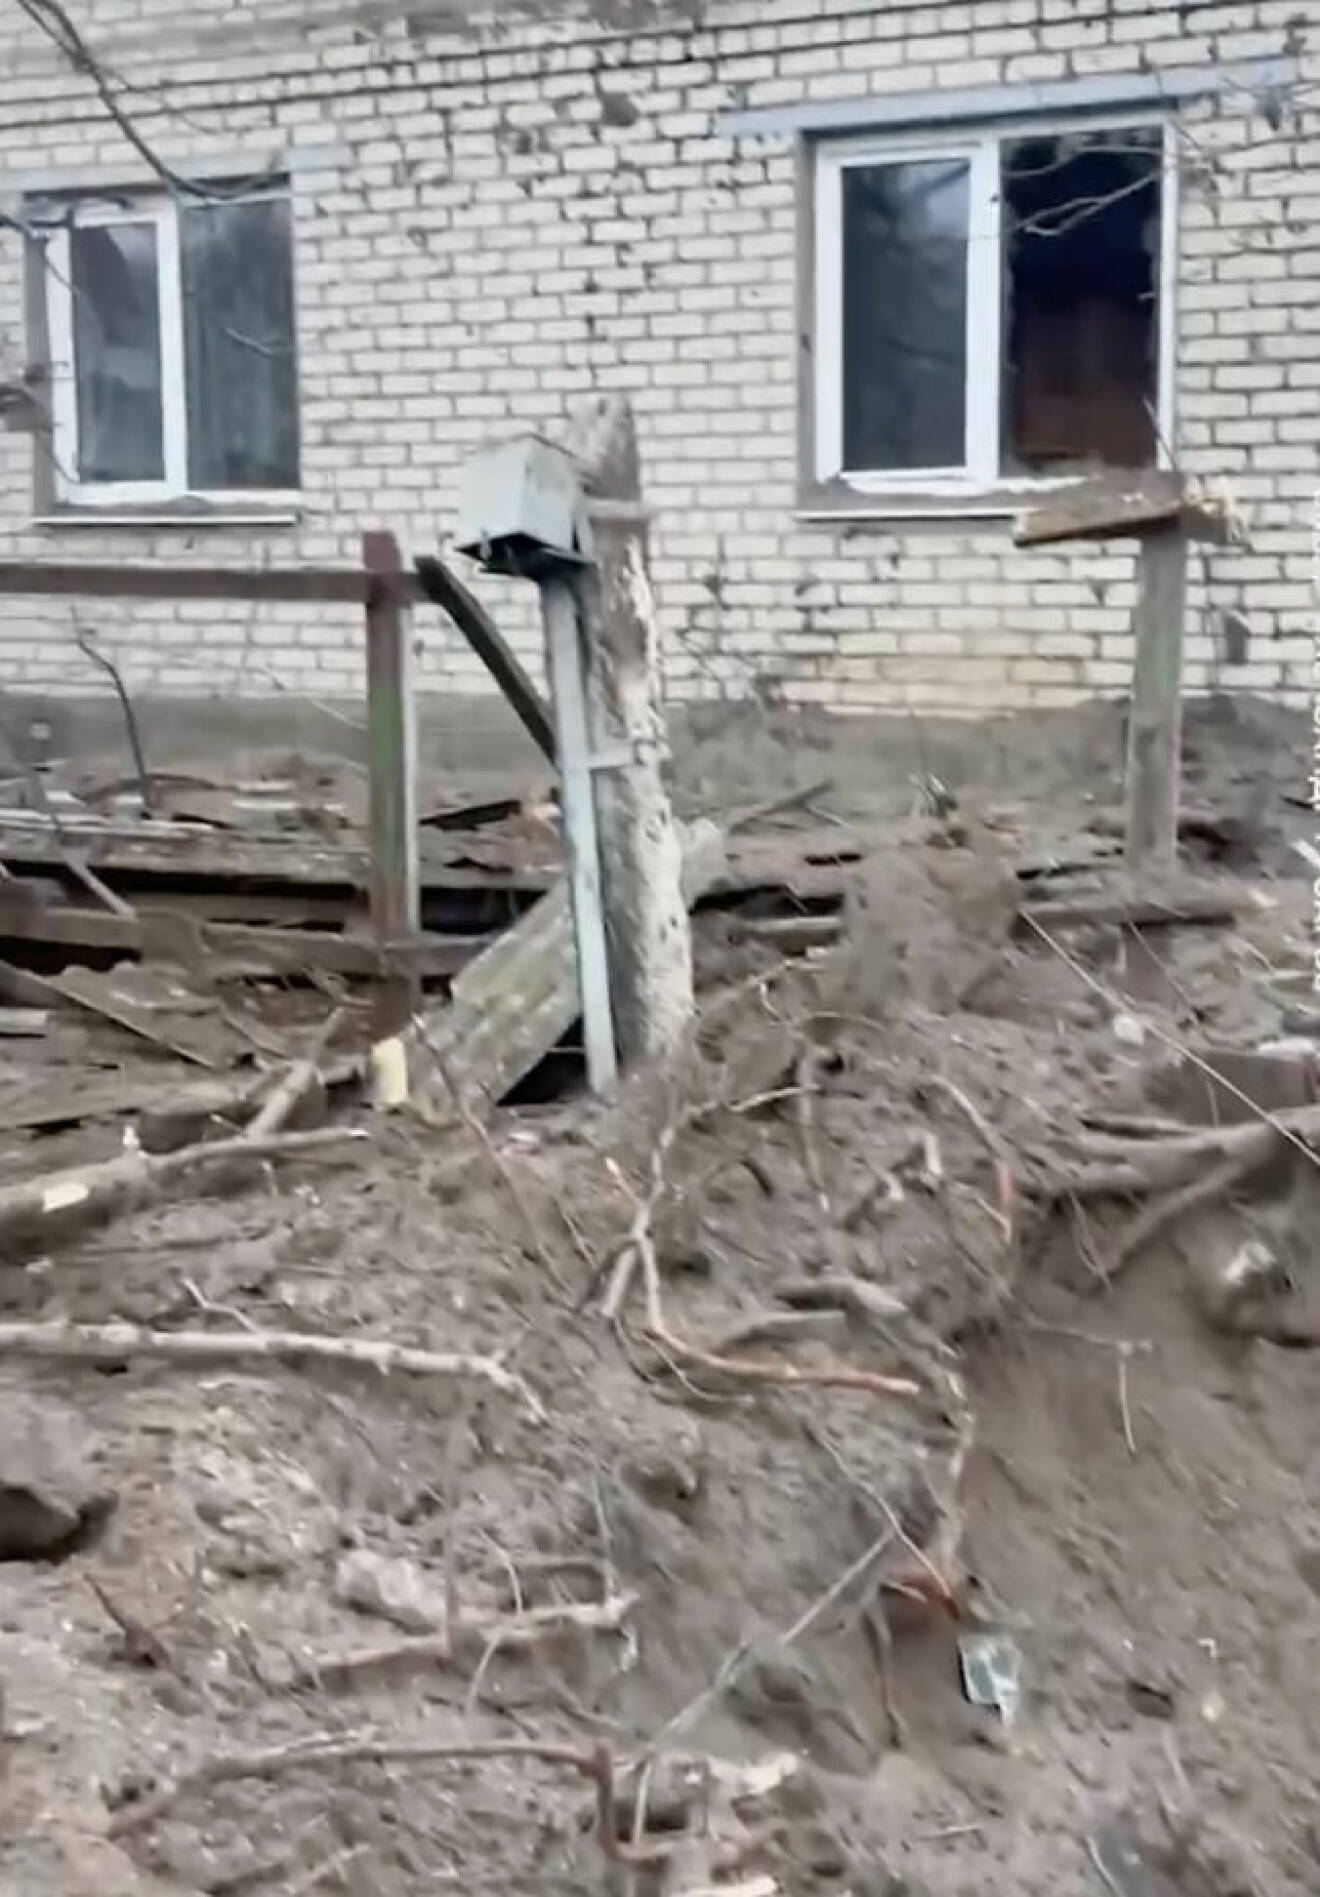 ukraina hus drönare attack